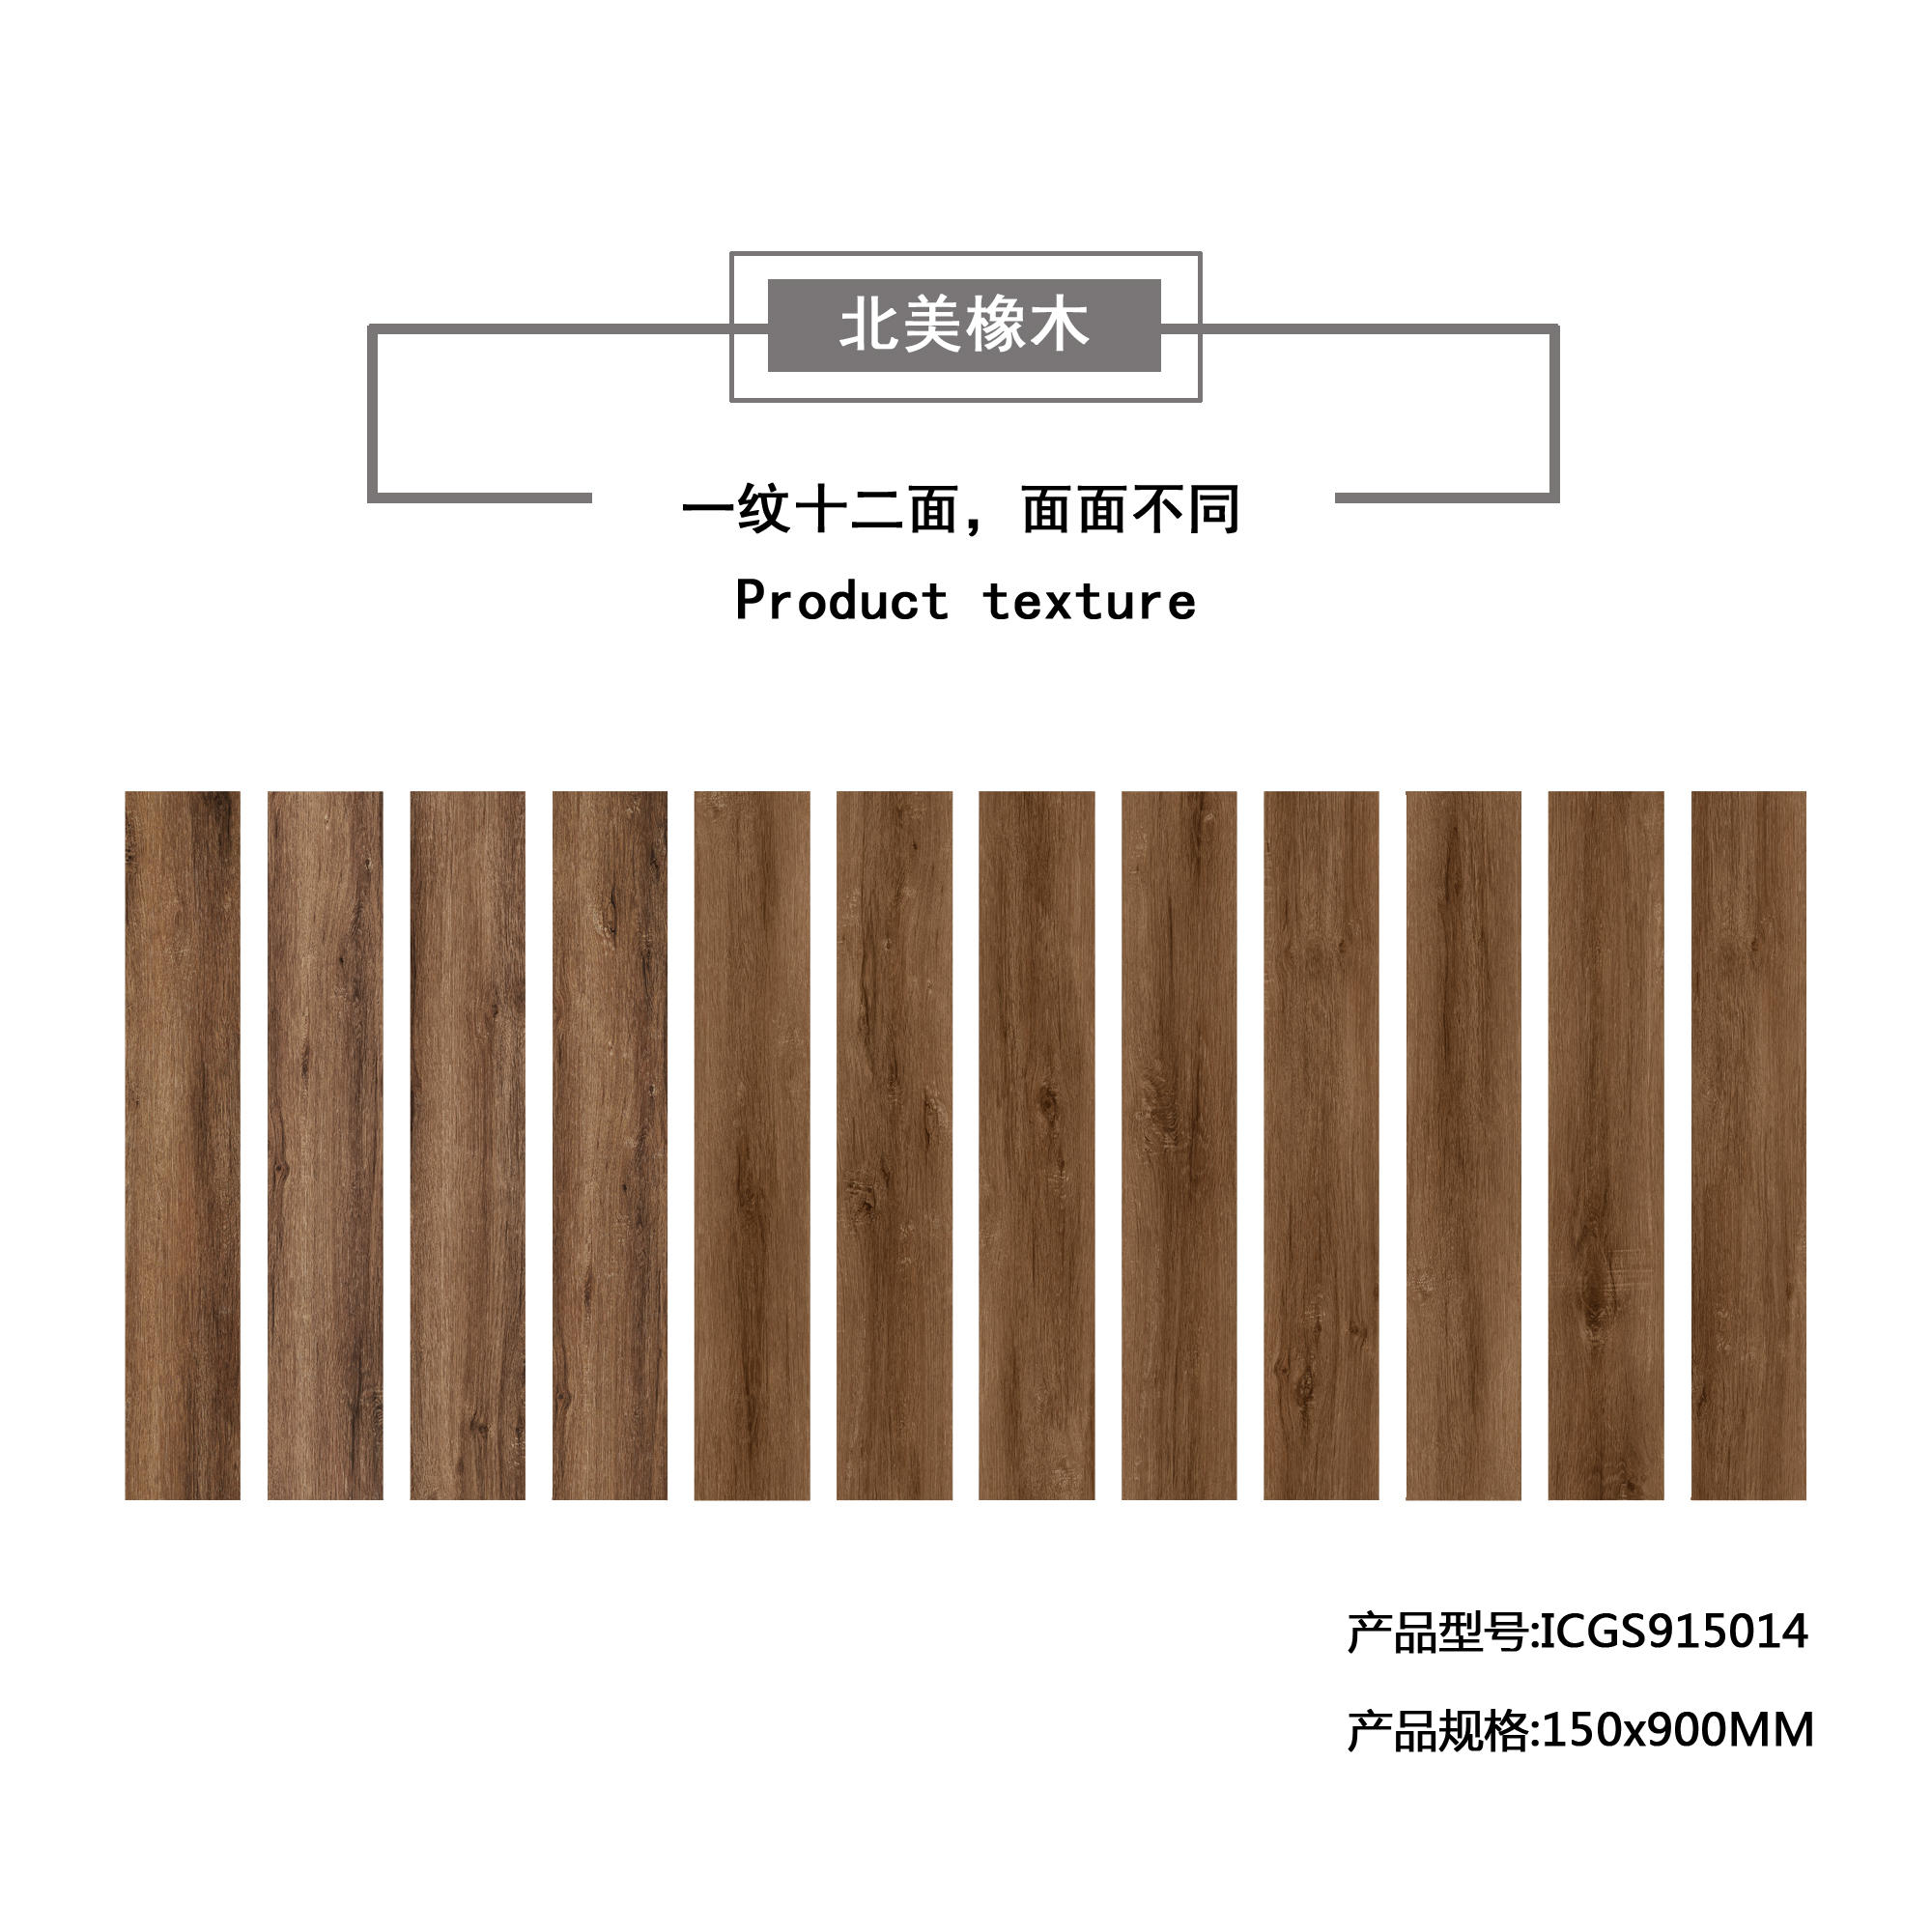 北美橡木（棕黄）木纹地板砖ICGS915014产品混铺图